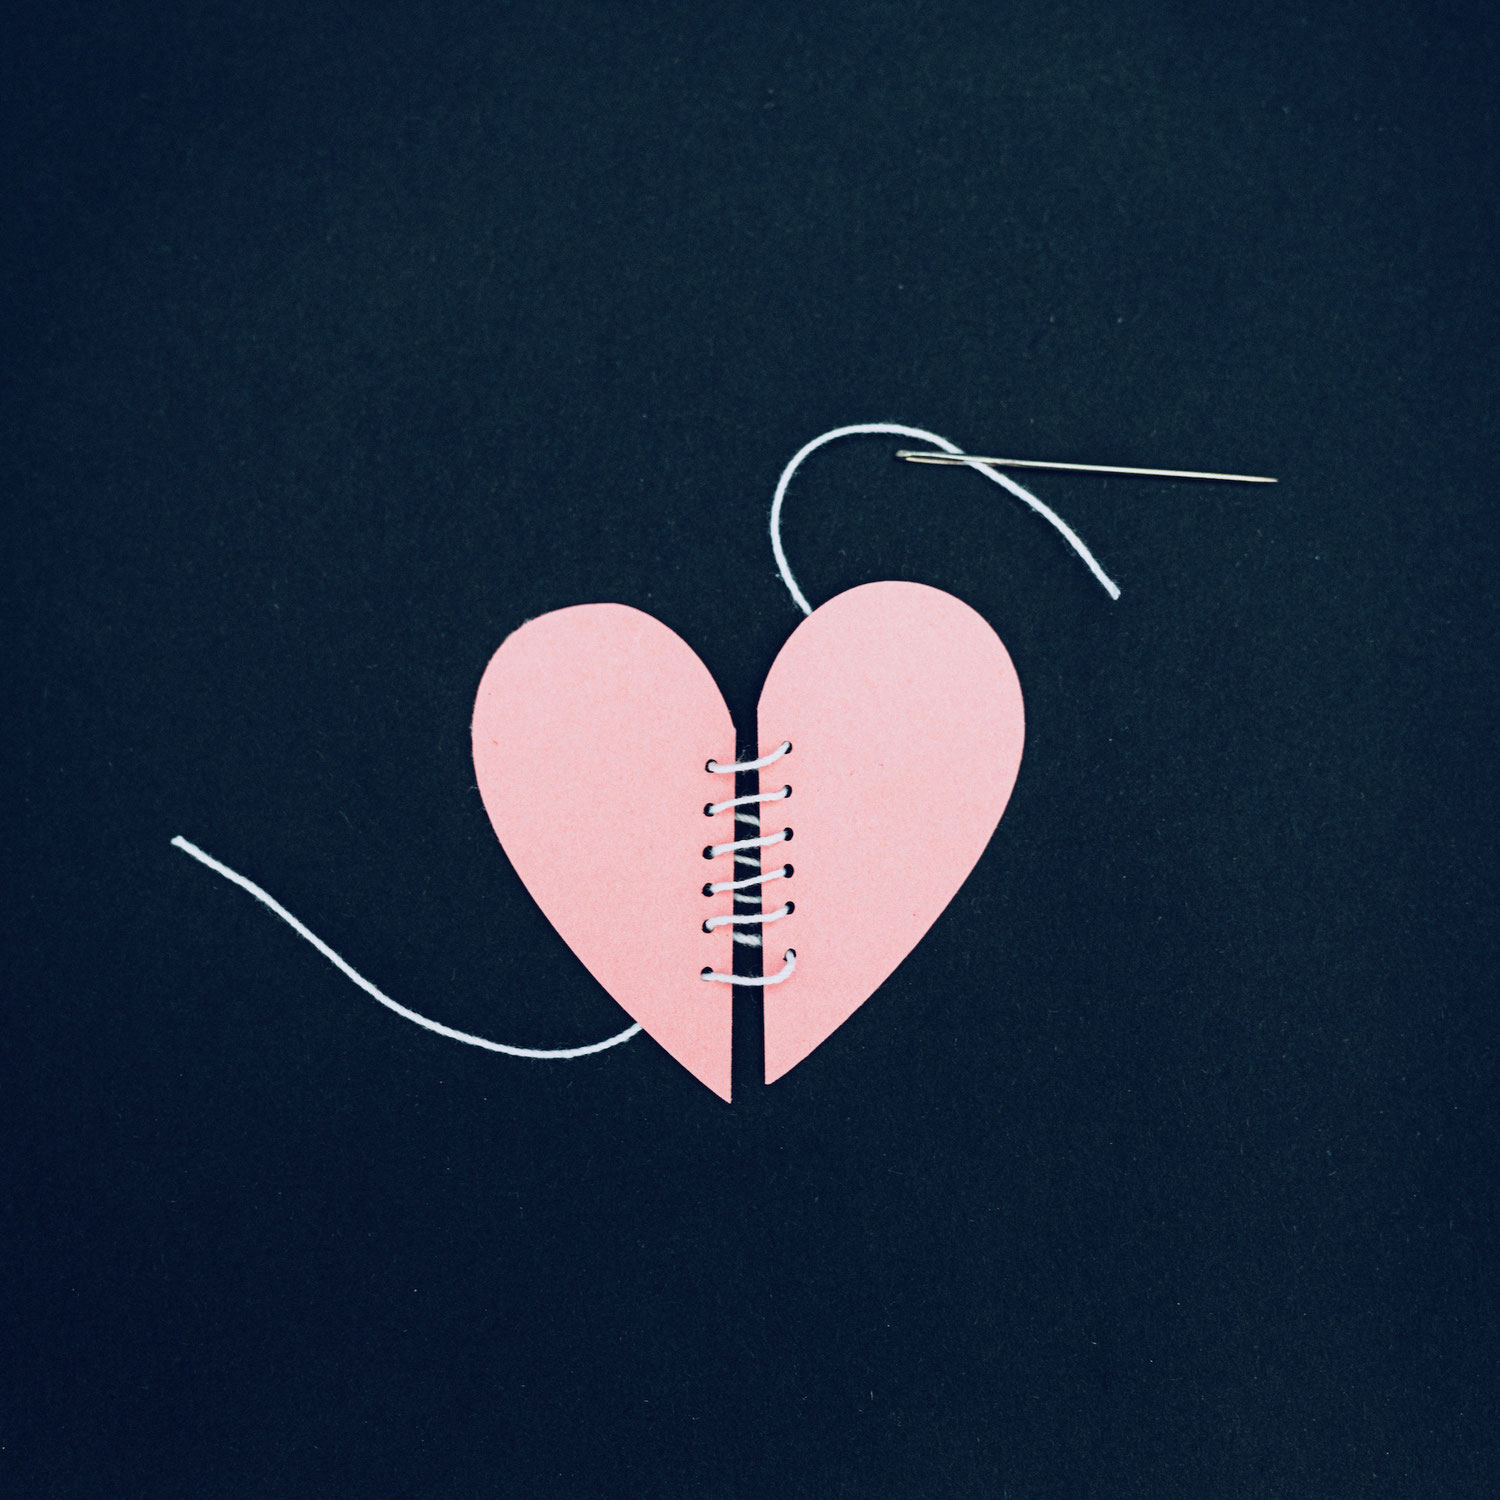 Das Herz zusammenflicken - was tun bei Trennungsschmerz & Liebeskummer?